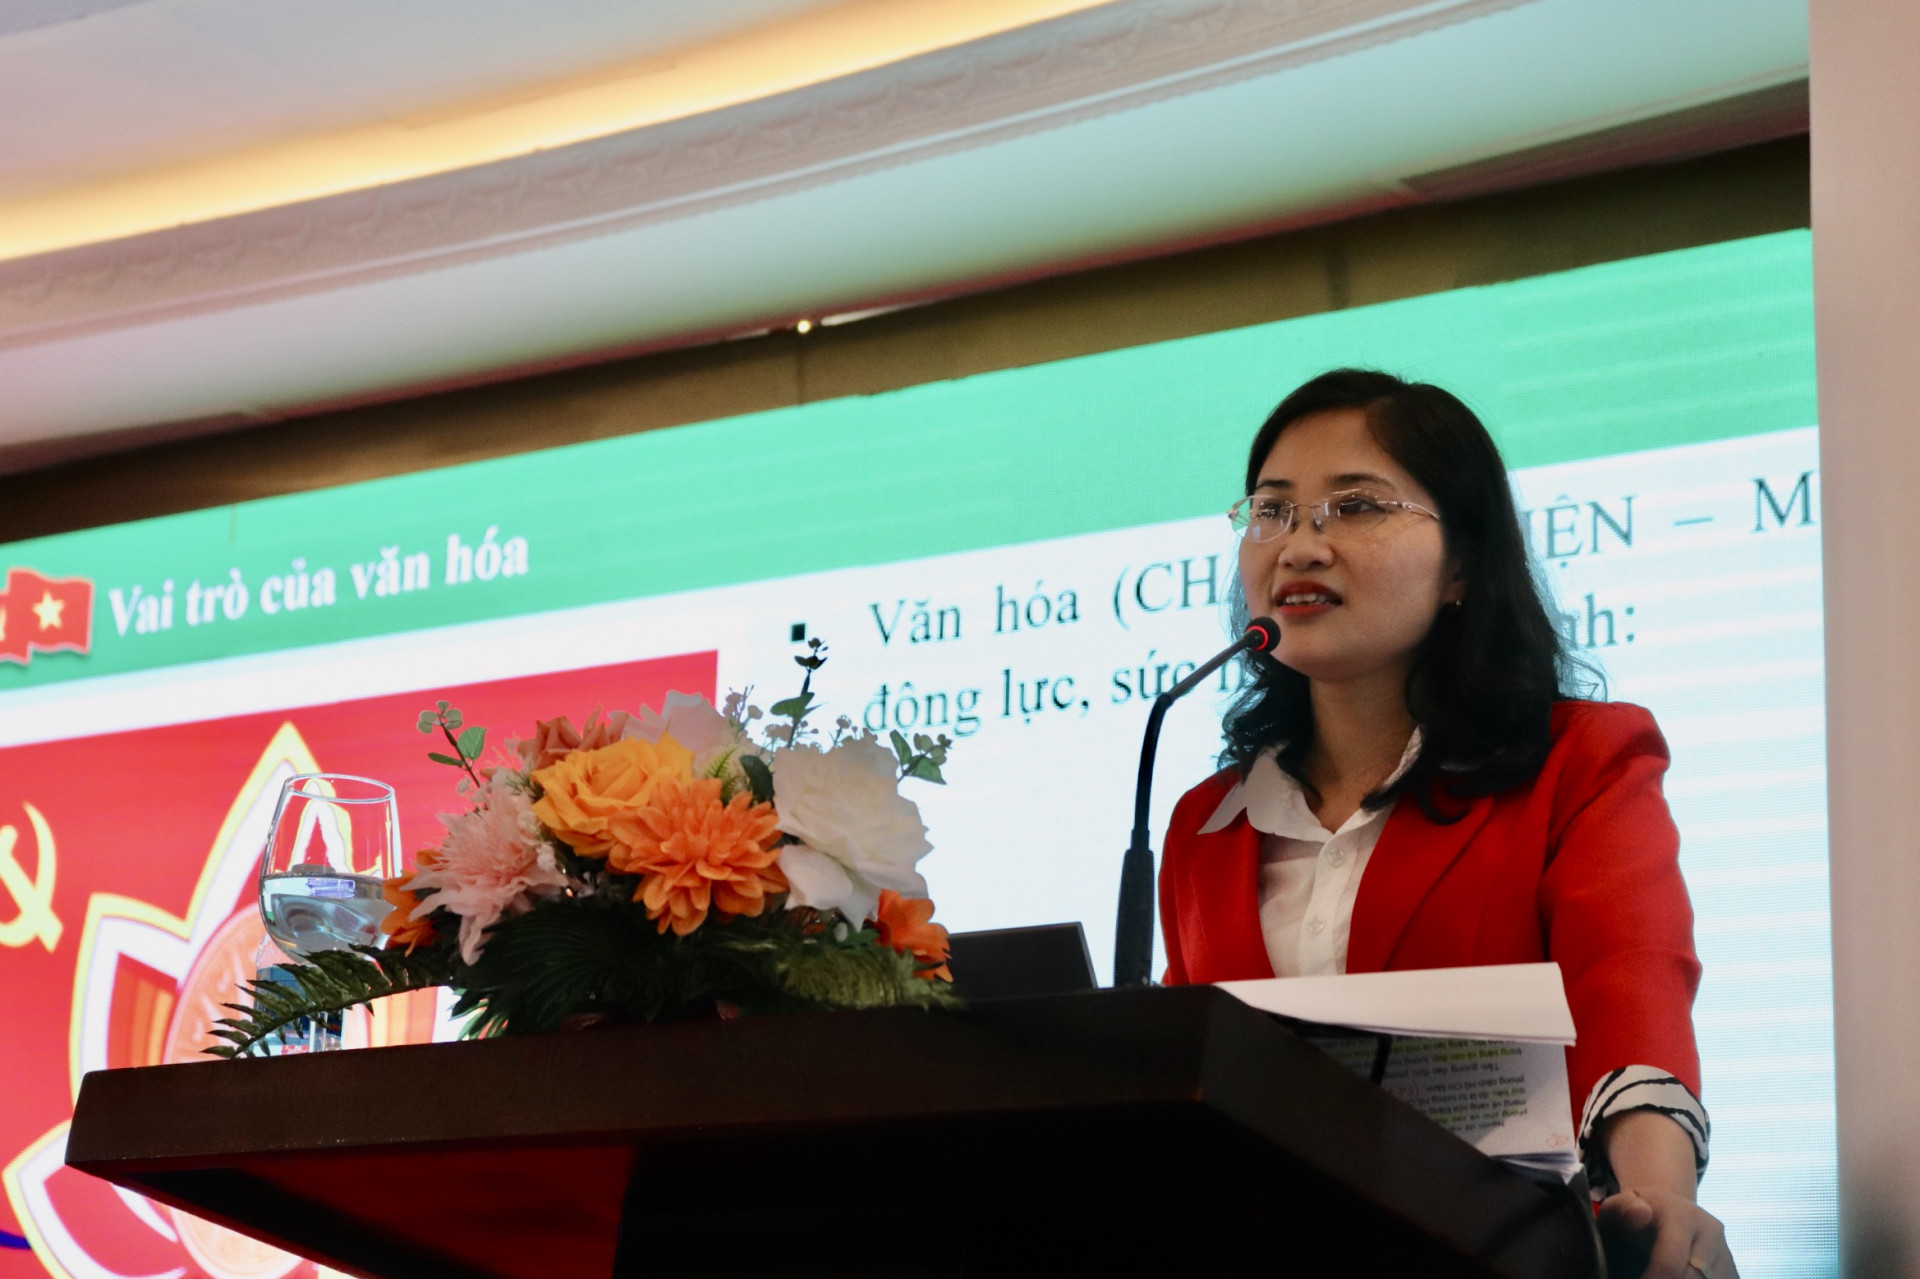 Bà Lưu Hồng Vân - Phó Trưởng Ban Tuyên giáo Tỉnh ủy trình bày Chuyên đề.